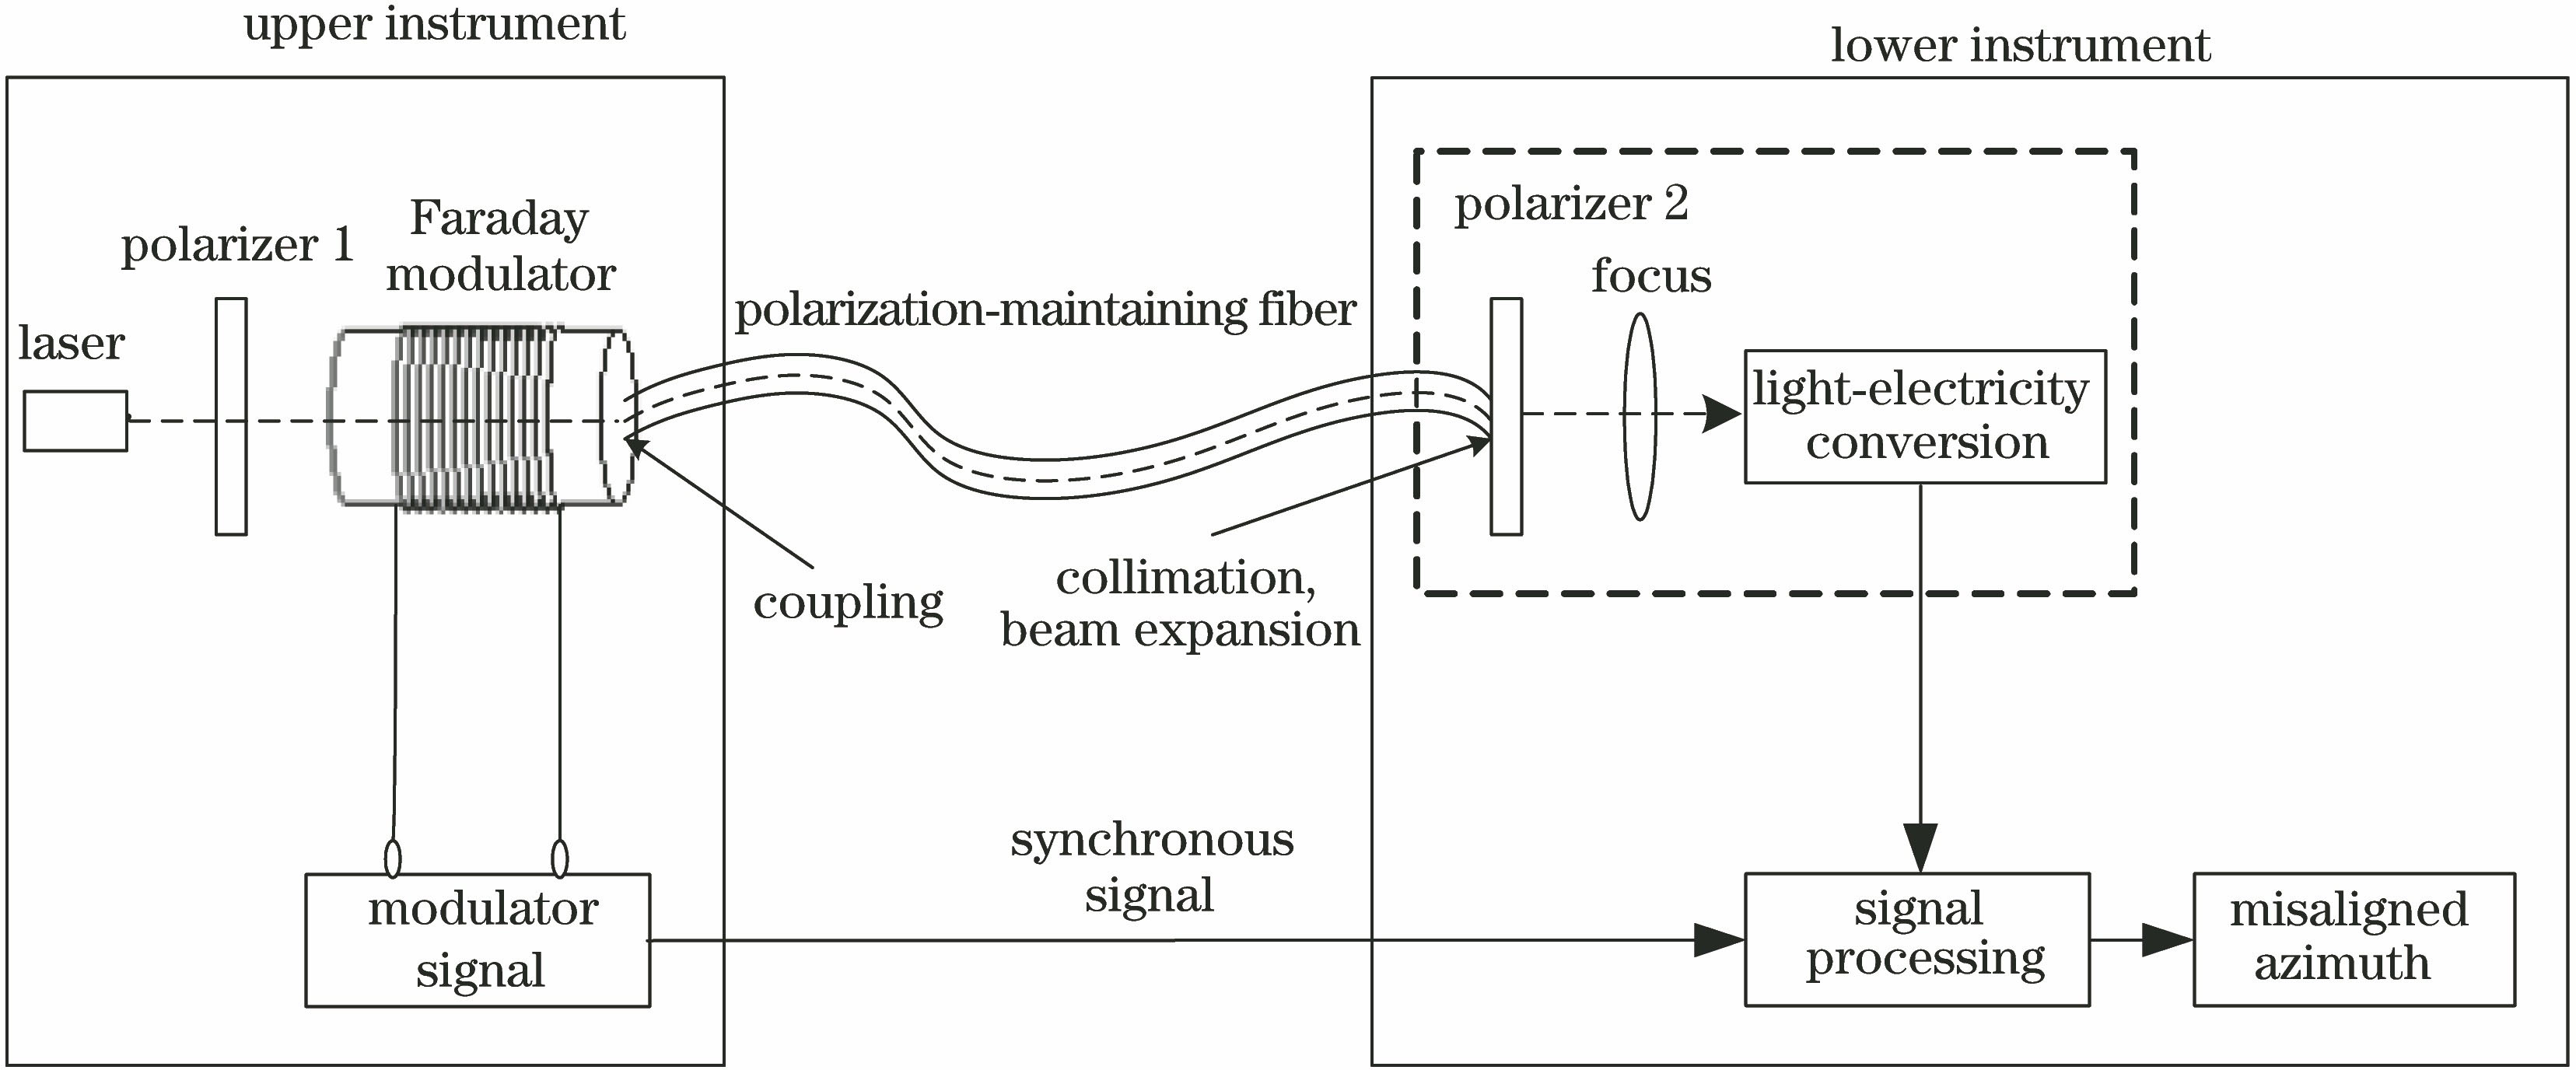 Principle of azimuth transmission system based on polarization-maintaining fiber